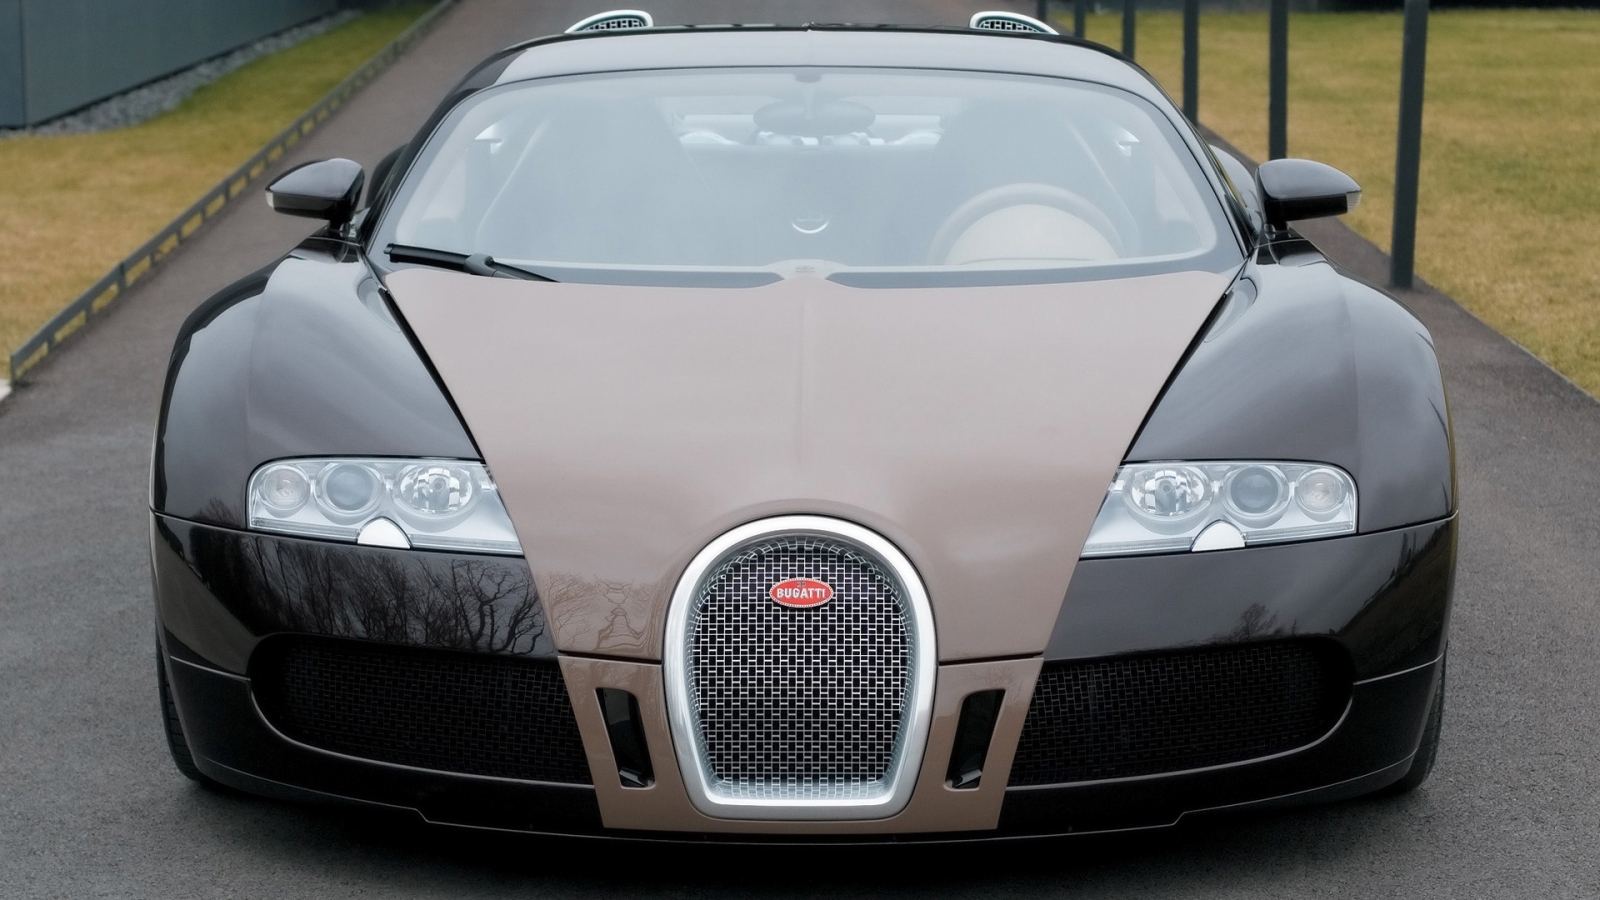 Bugatti Veyron Fbg par Hermes 2008 - Front for 1600 x 900 HDTV resolution